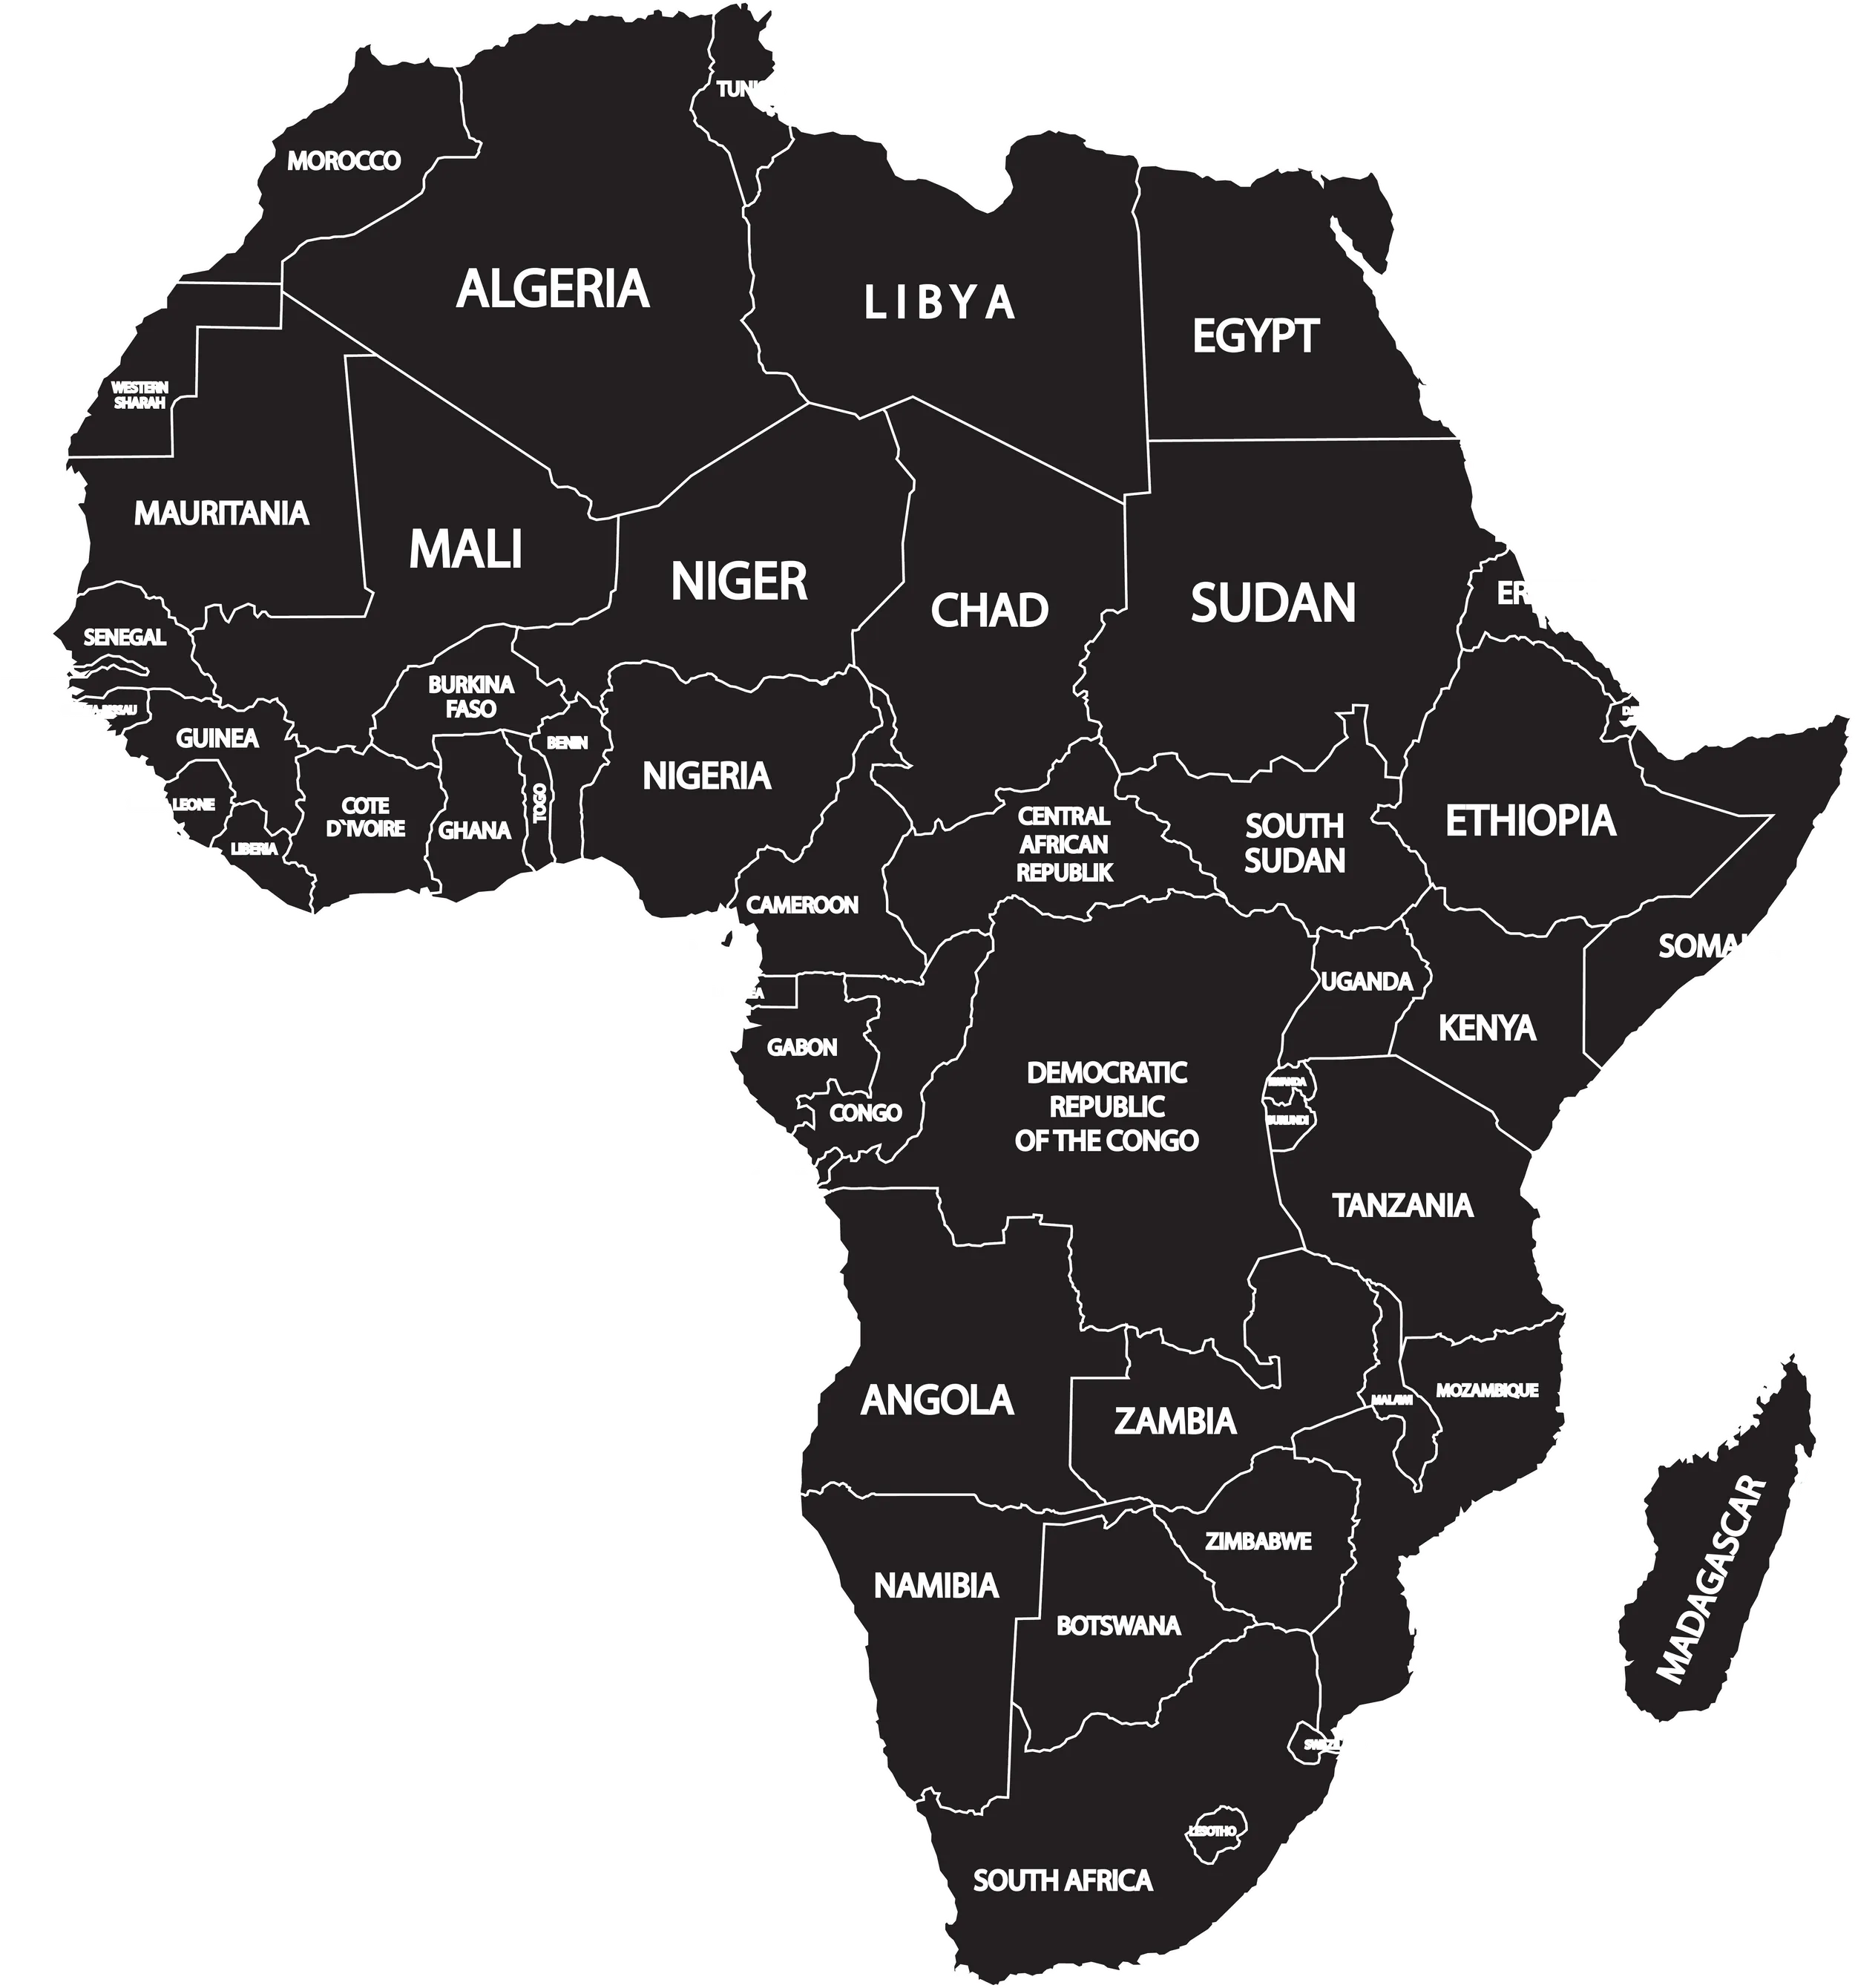 Länderkarte von Afrika mit Einzeichnung der Ländernamen und Grenzen